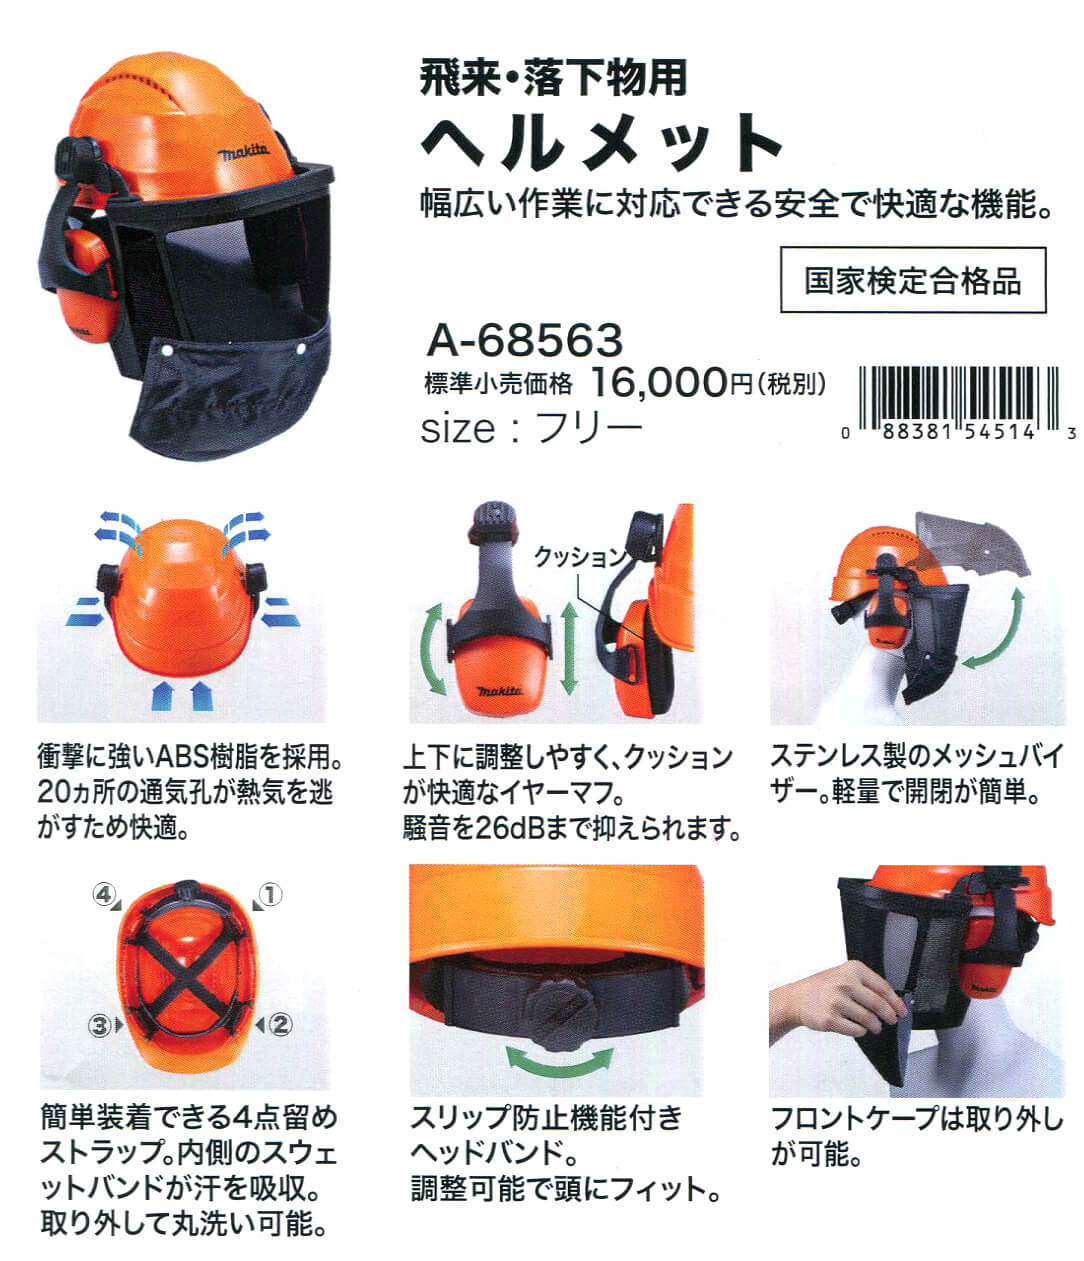 マキタ A-68563 飛来・落下物用ヘルメット ウエダ金物【公式サイト】